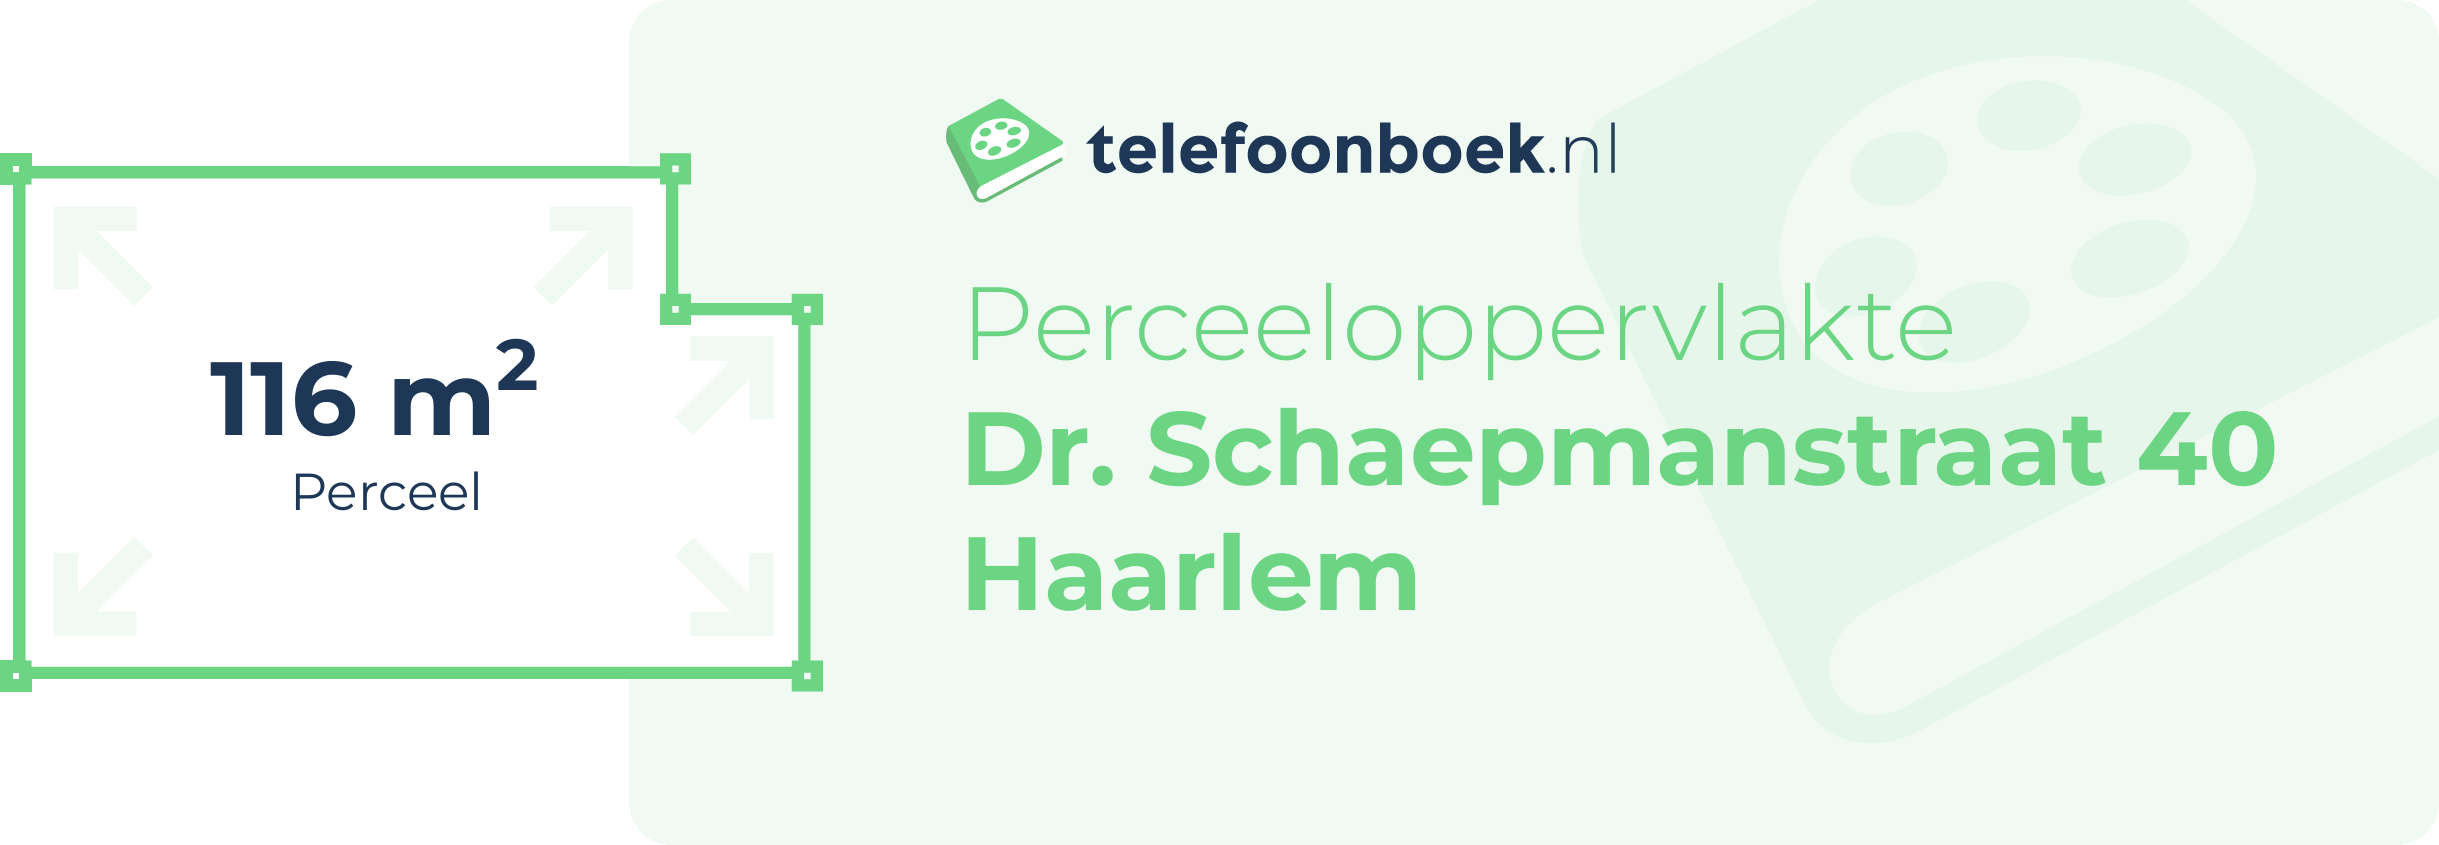 Perceeloppervlakte Dr. Schaepmanstraat 40 Haarlem